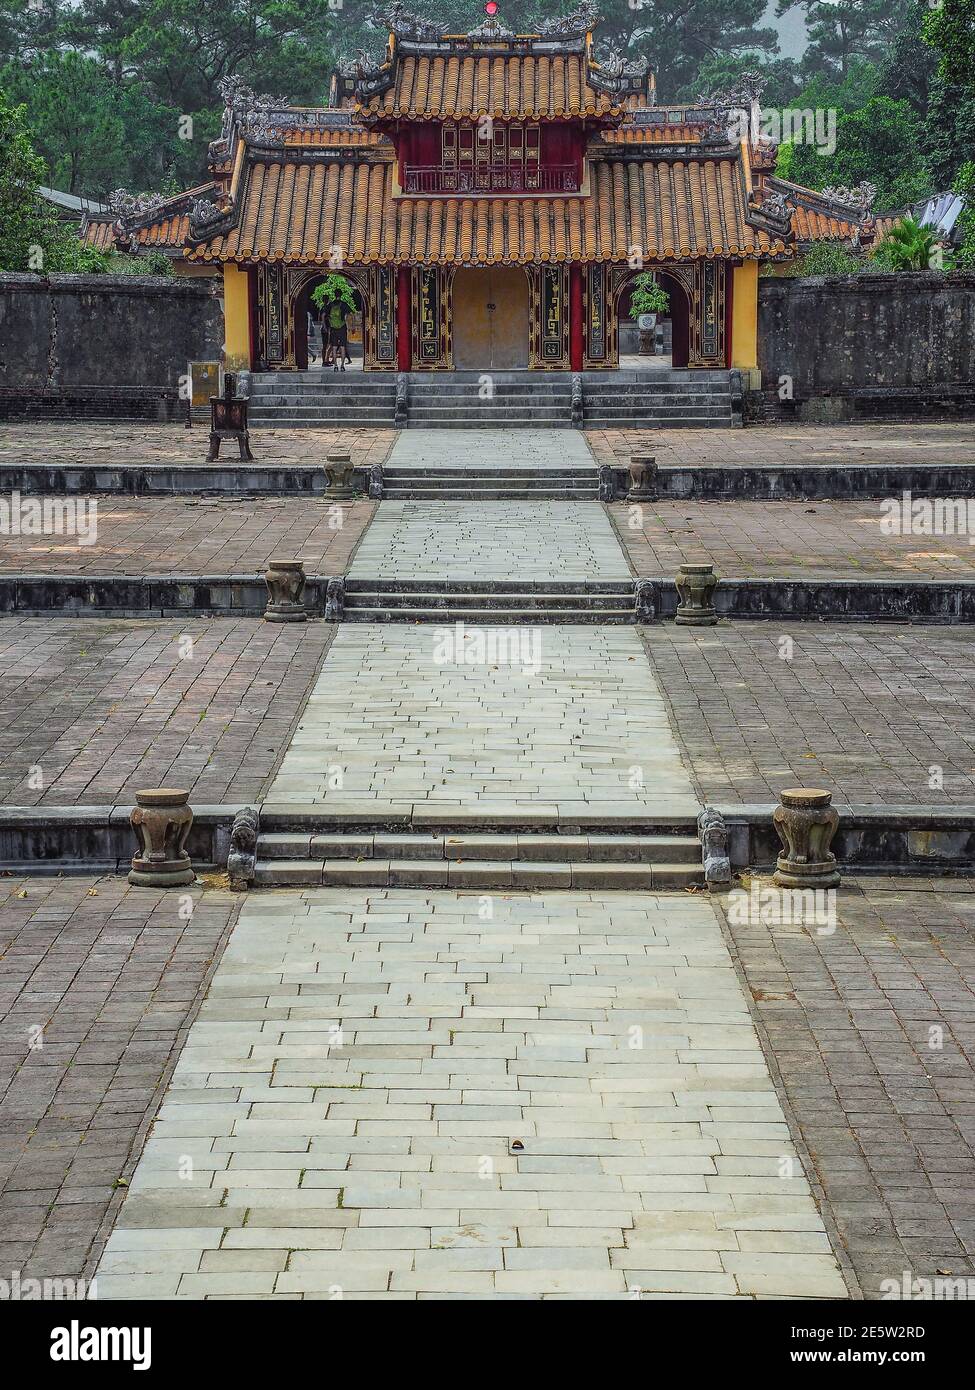 HUE, VIETNAM - 21 marzo 2017: Porta di Hien Duc alla tomba di Minh Mang. Hue è l'ex capitale della dinastia Nguyen. Foto Stock